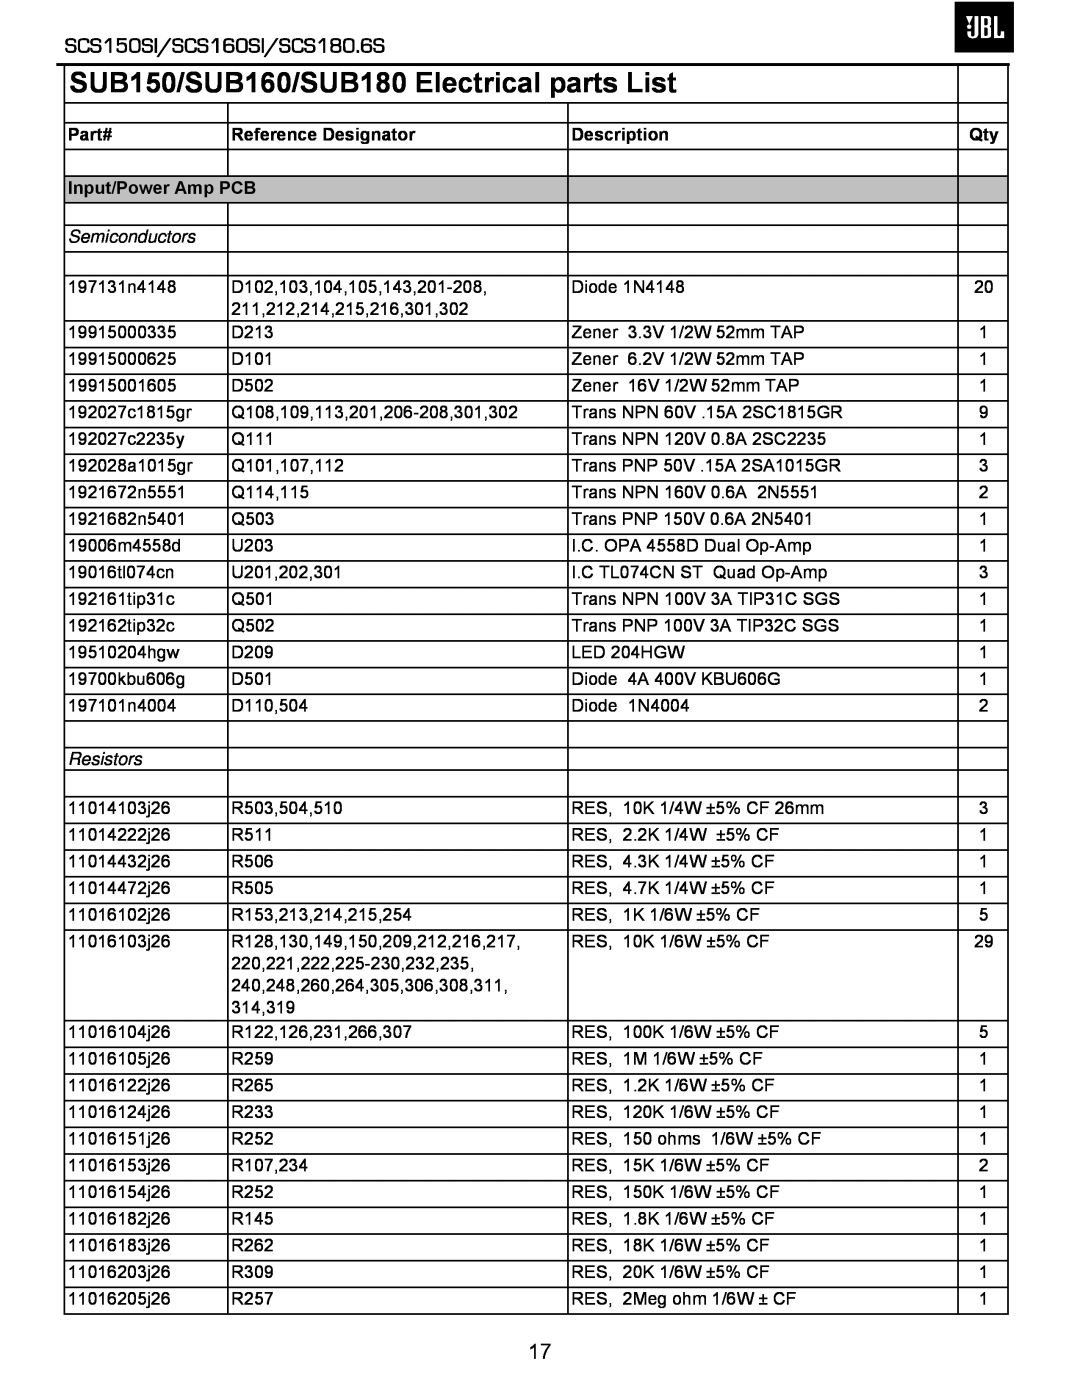 JBL SUB150/SUB160/SUB180 Electrical parts List, SCS150SI/SCS160SI/SCS180.6S, Part#, Reference Designator, Description 